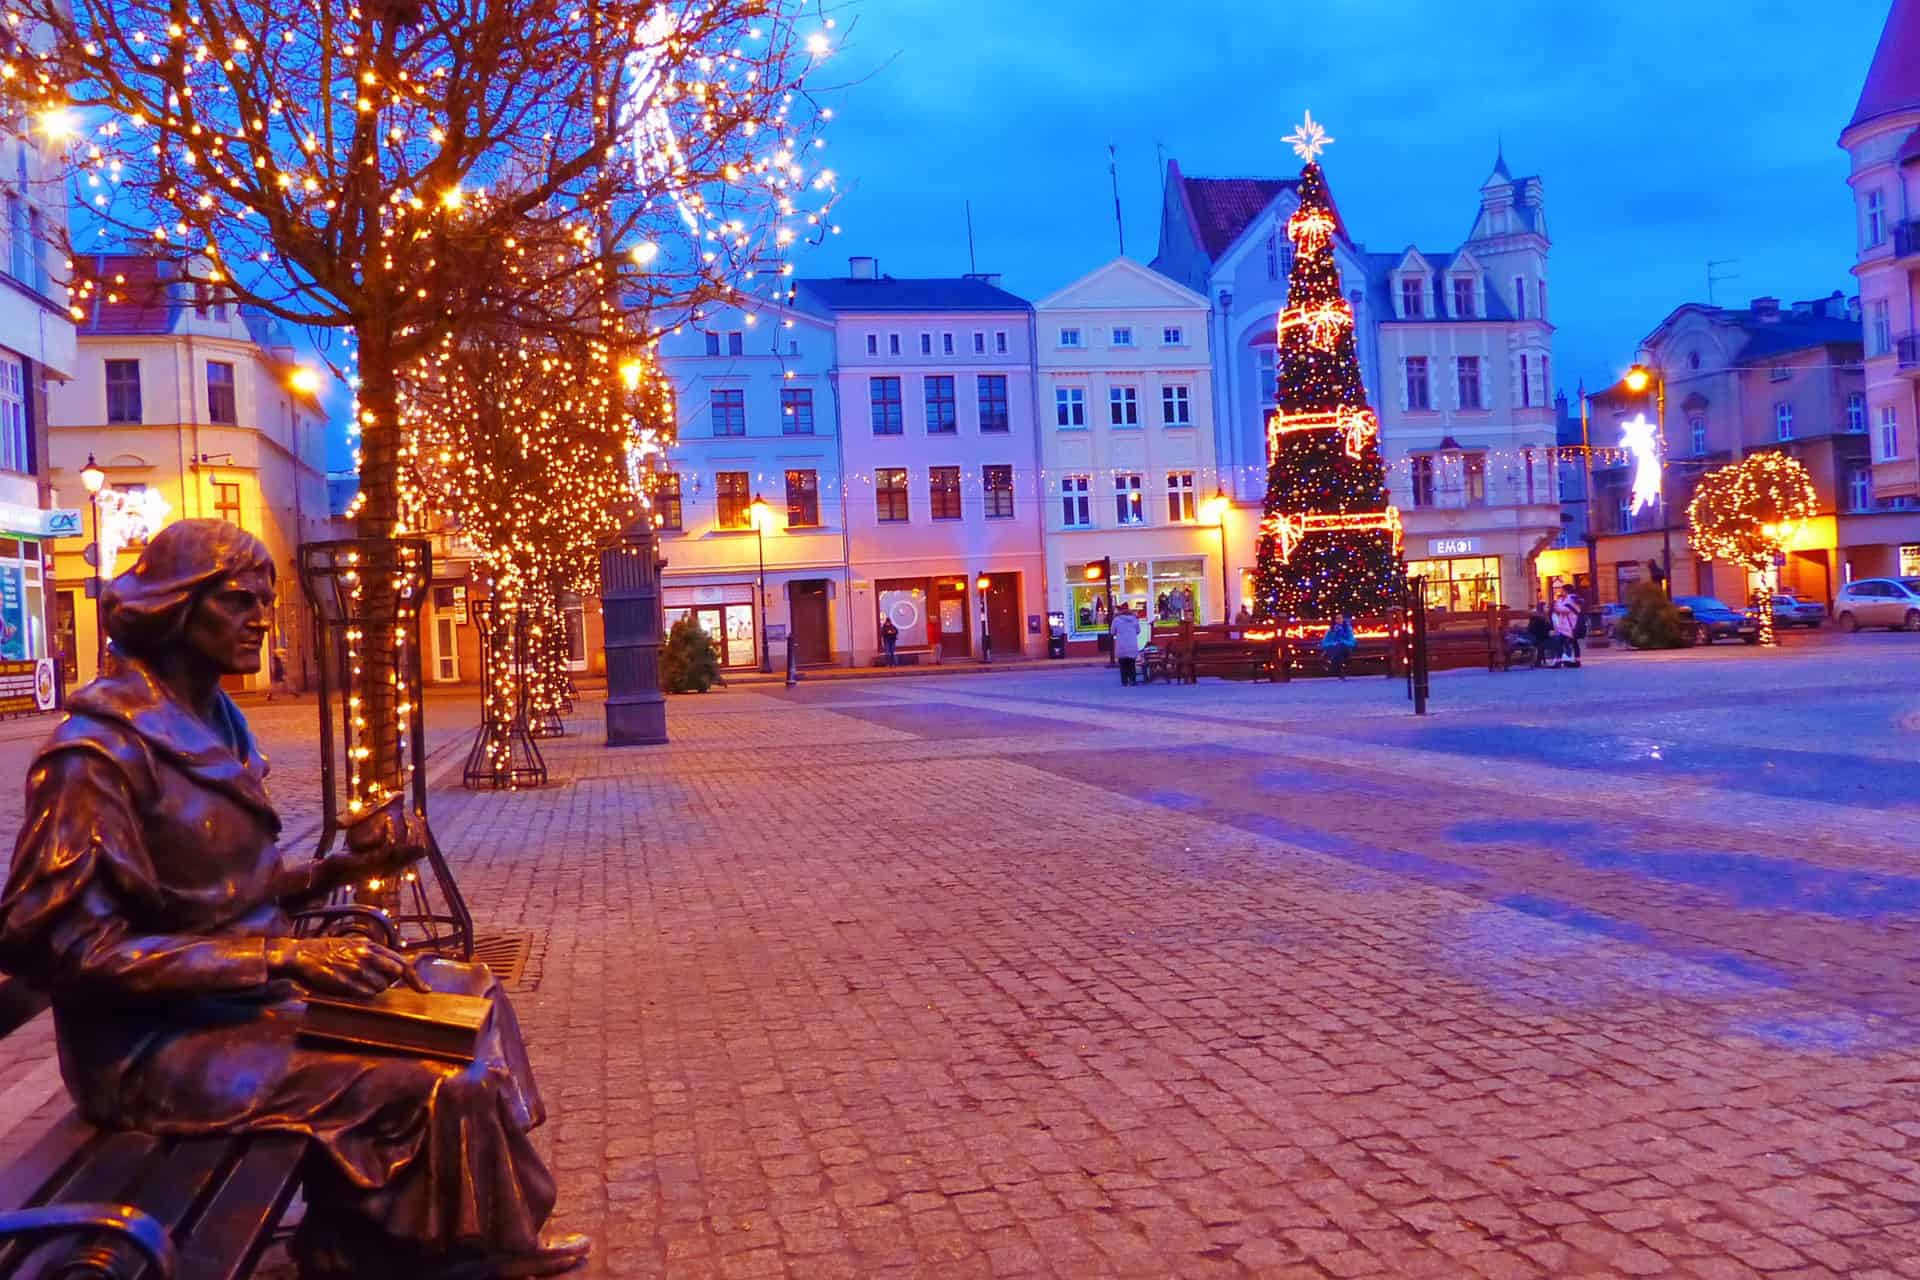 Weihnachten in Polen - Stadt Grudziądz im schönen Licht